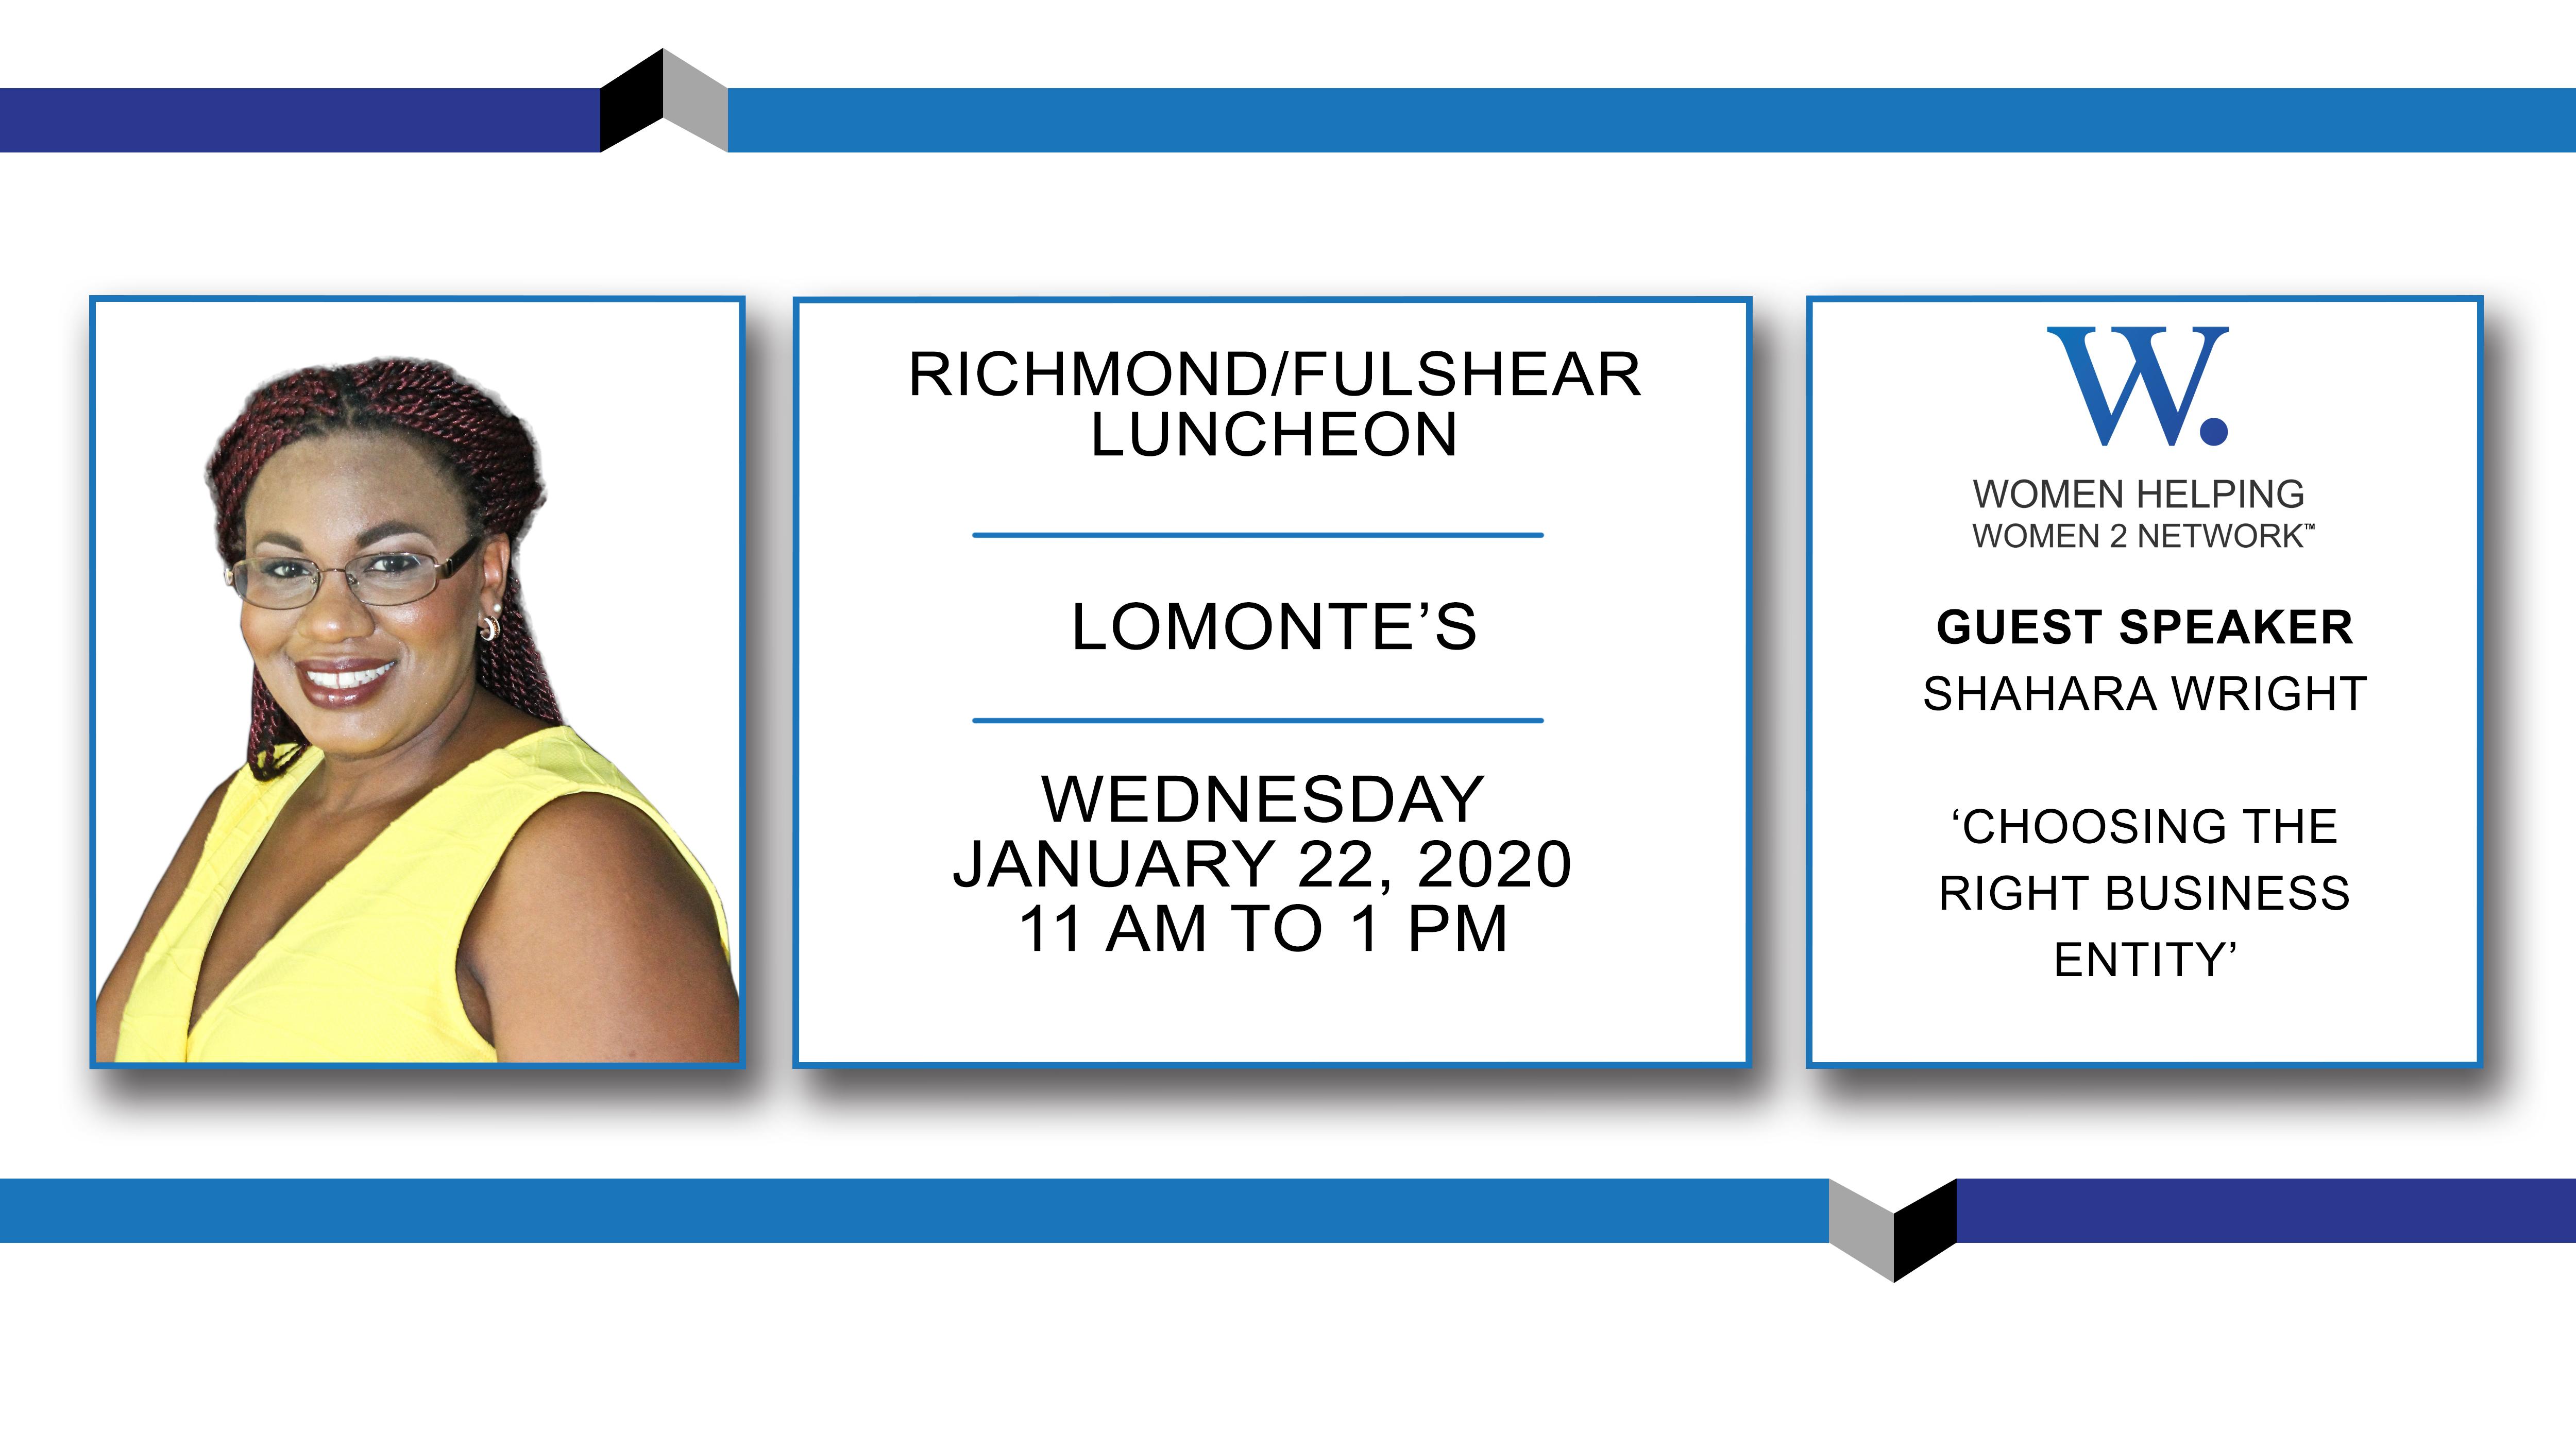 WHW2N - Richmond / Fulshear Luncheon